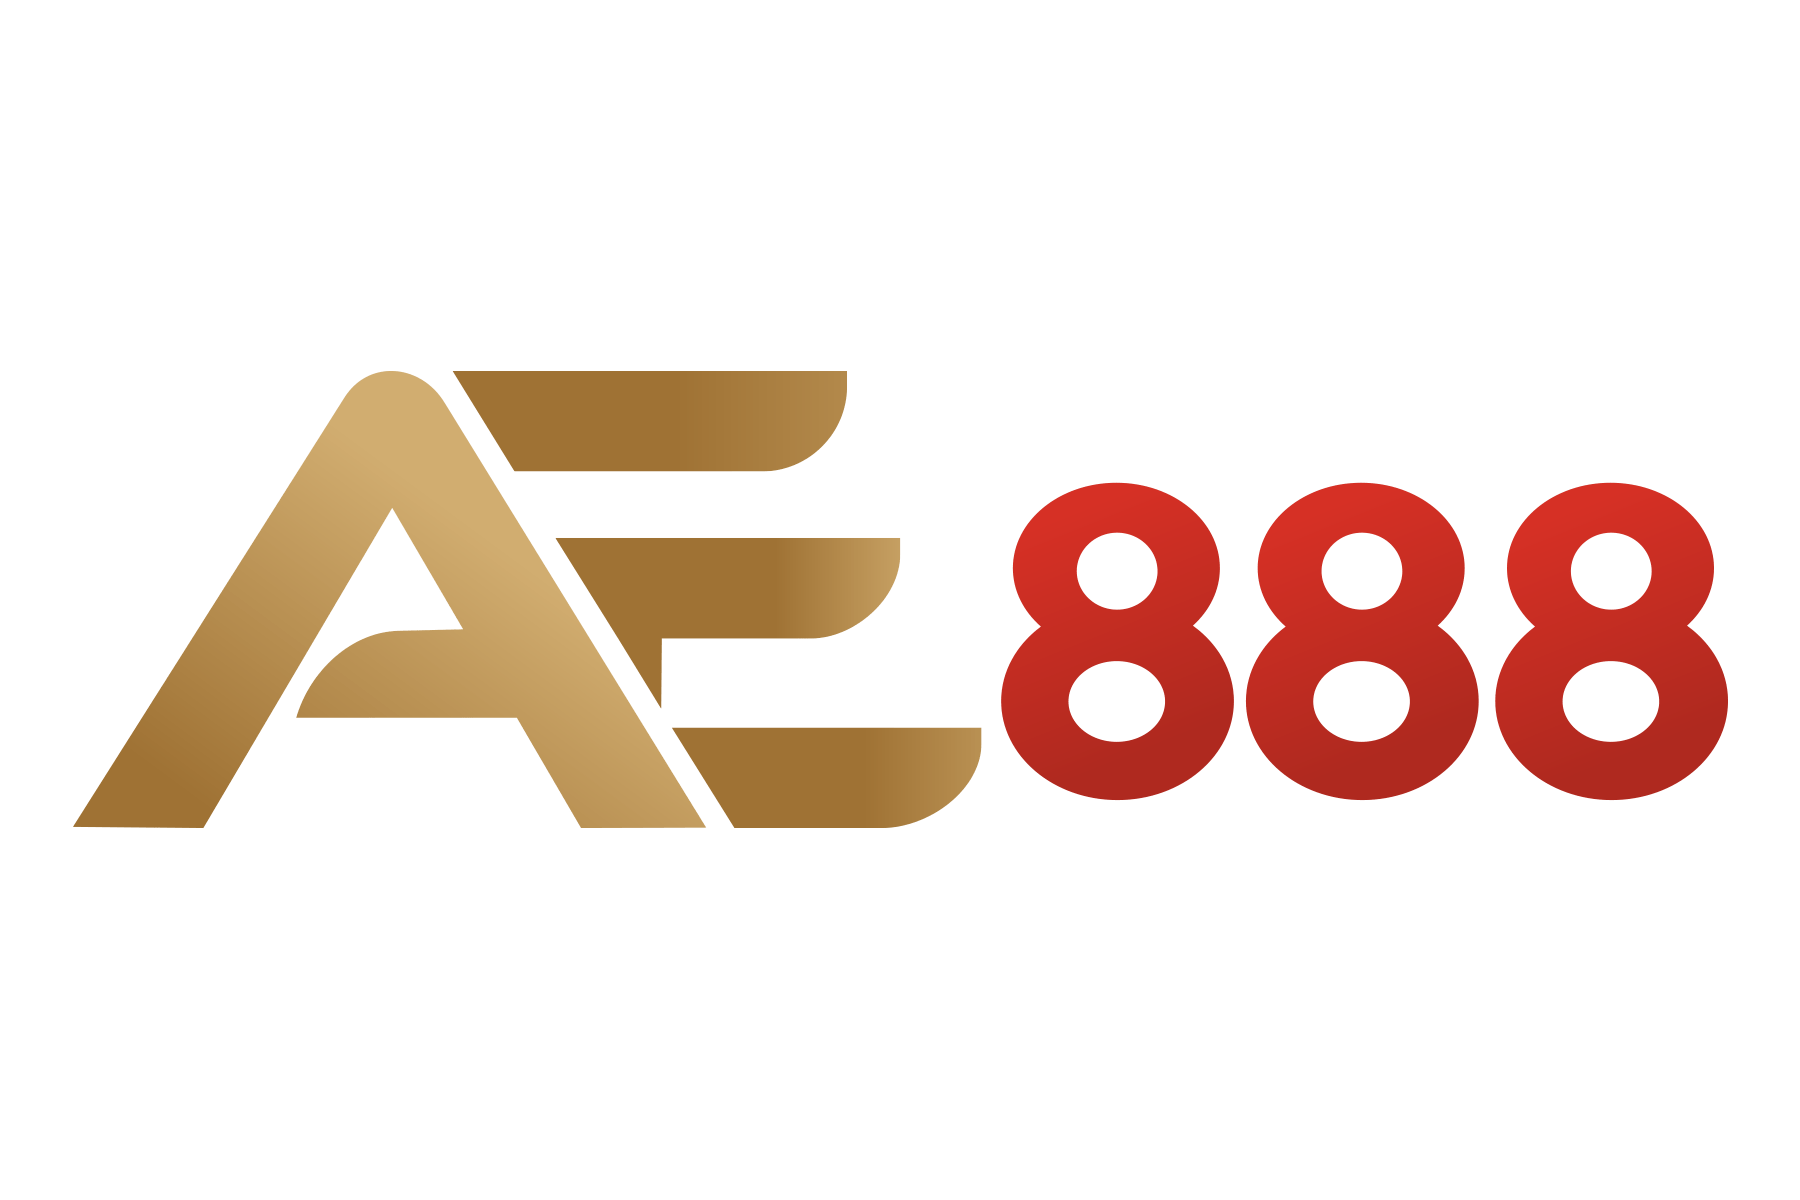 AE888 – Nhà cái cá cược thế hệ mới nổi bật nhất năm 2022